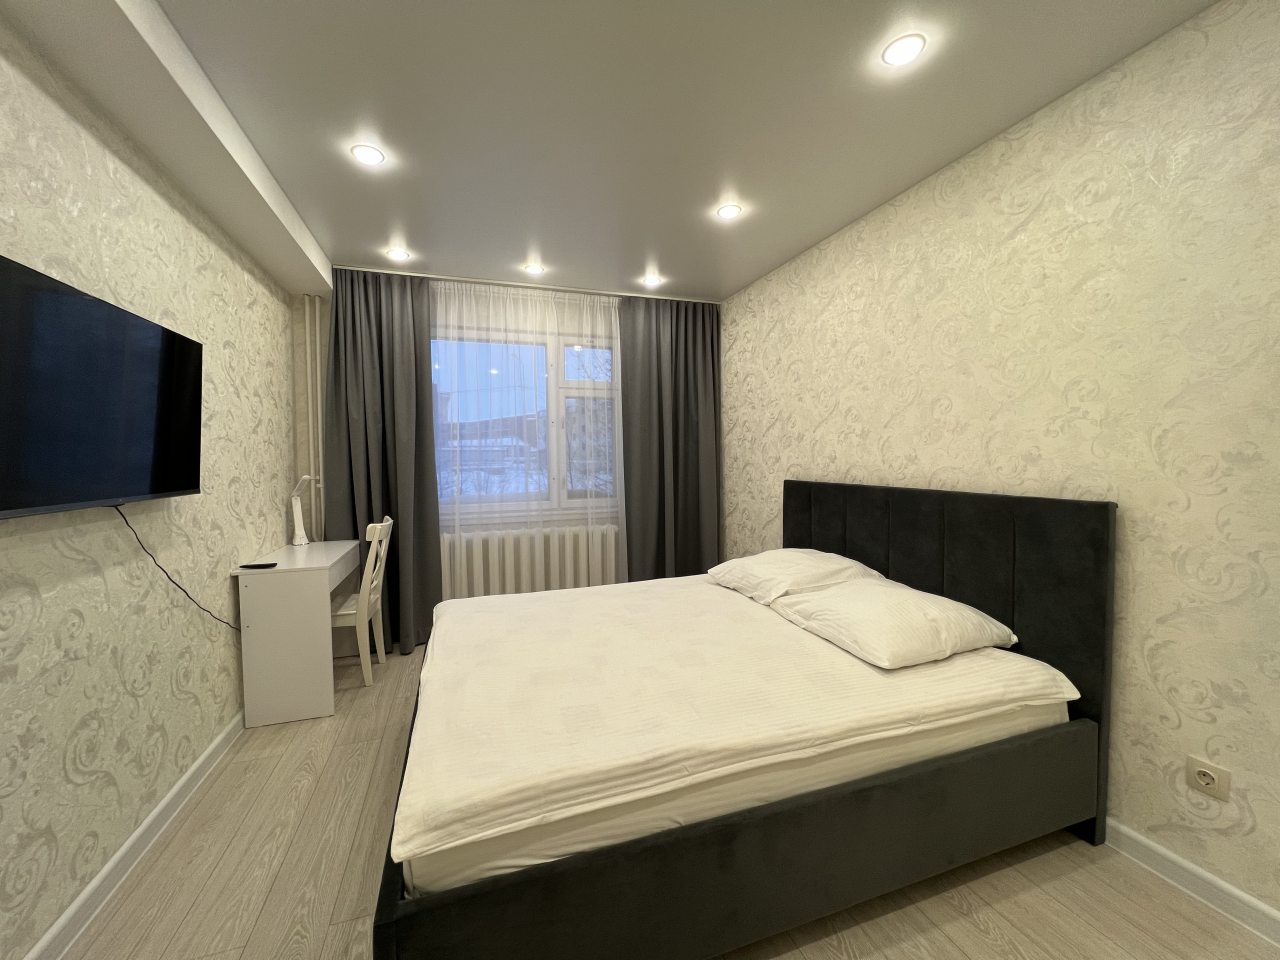 Квартира Илне - сеть гостевых квартир в городе Салехард, Салехард